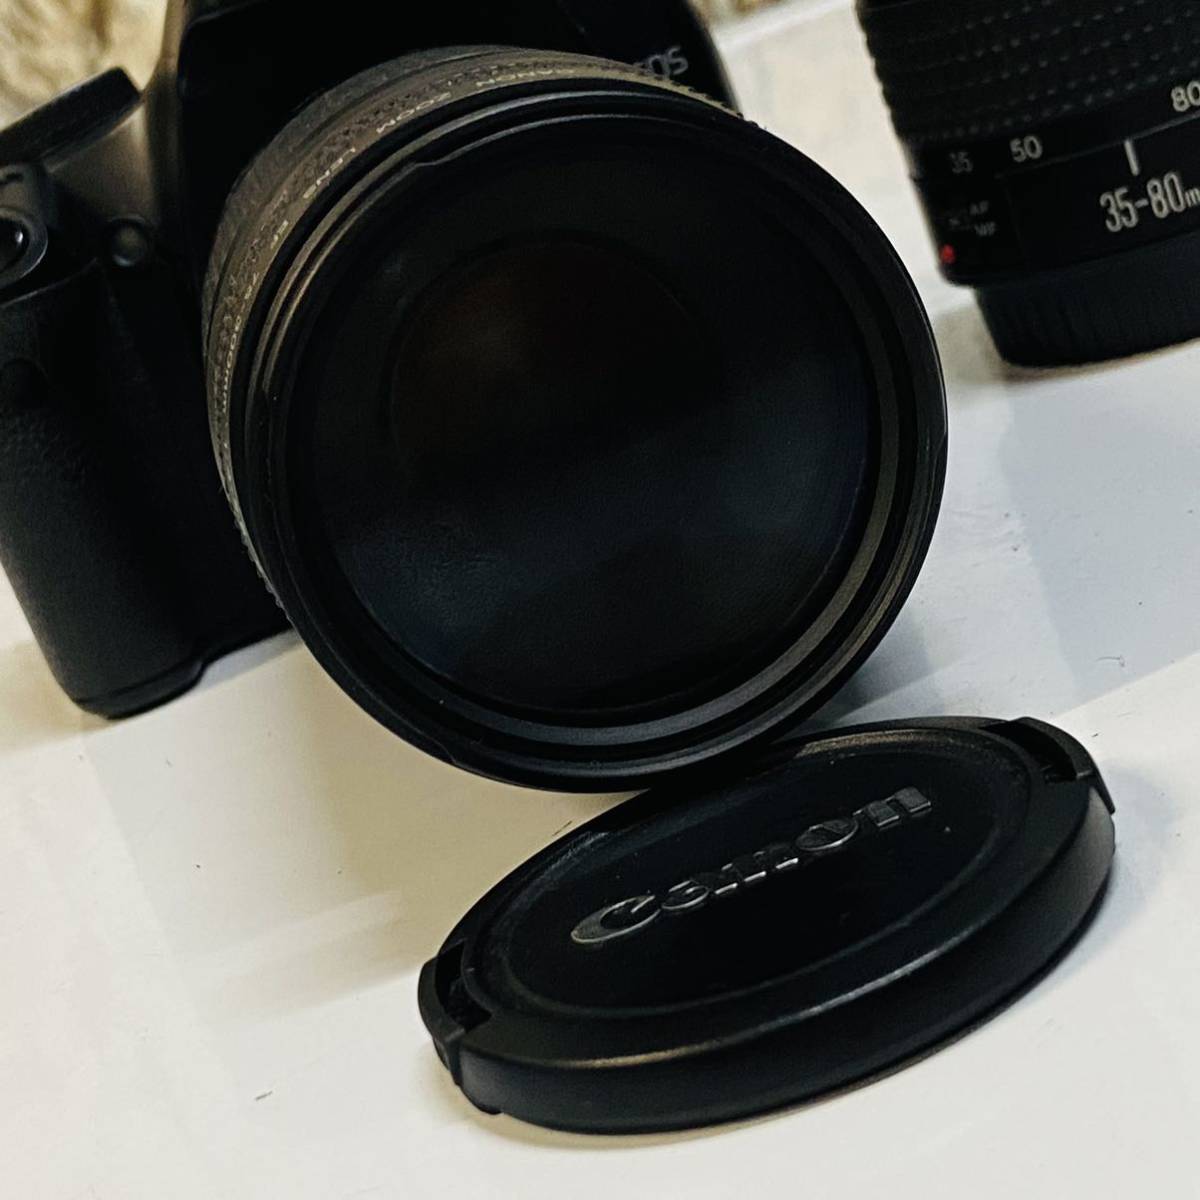 デジタル一眼カメラ レンズセット Canon EOS Kiss X2 EF LENS 75-300mm 1:4-5.6 ii /35-80mm 52mm /レンズ2台動作未確認済みジャンク品_画像9